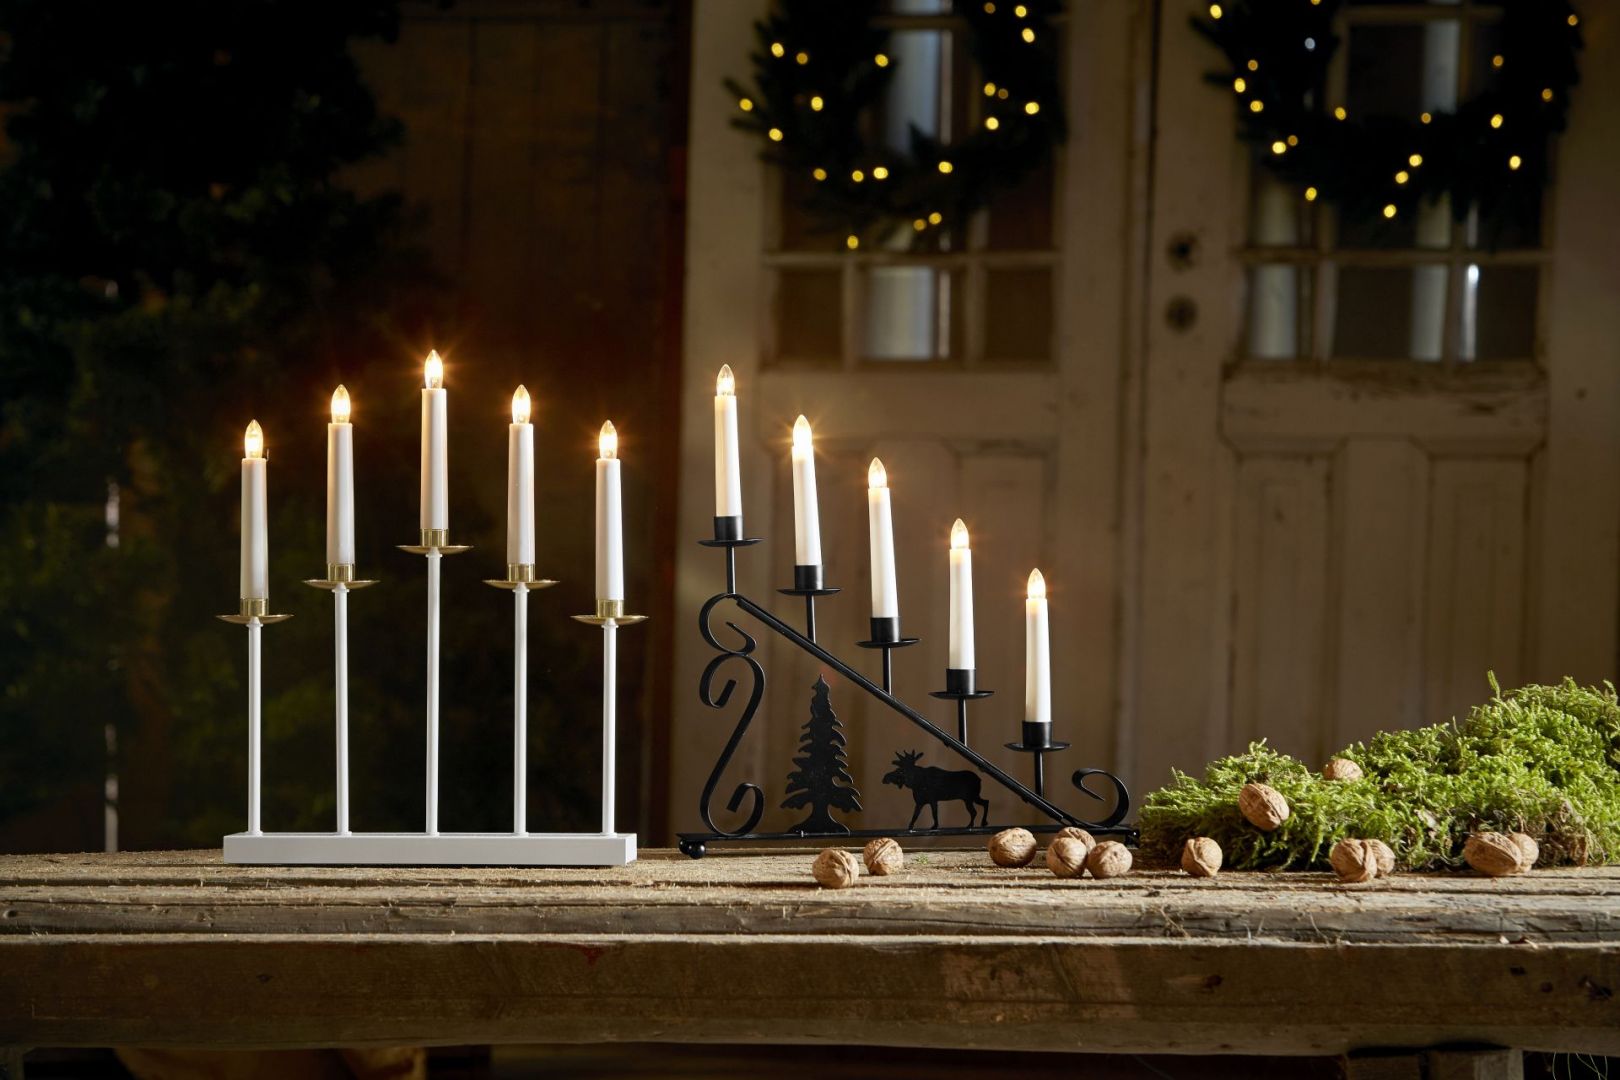 Kolekcja świątecznych dekoracji do domu przygotowana na 2021 rok przez markę Cellbes. Fot. mat. prasowe Cellbes